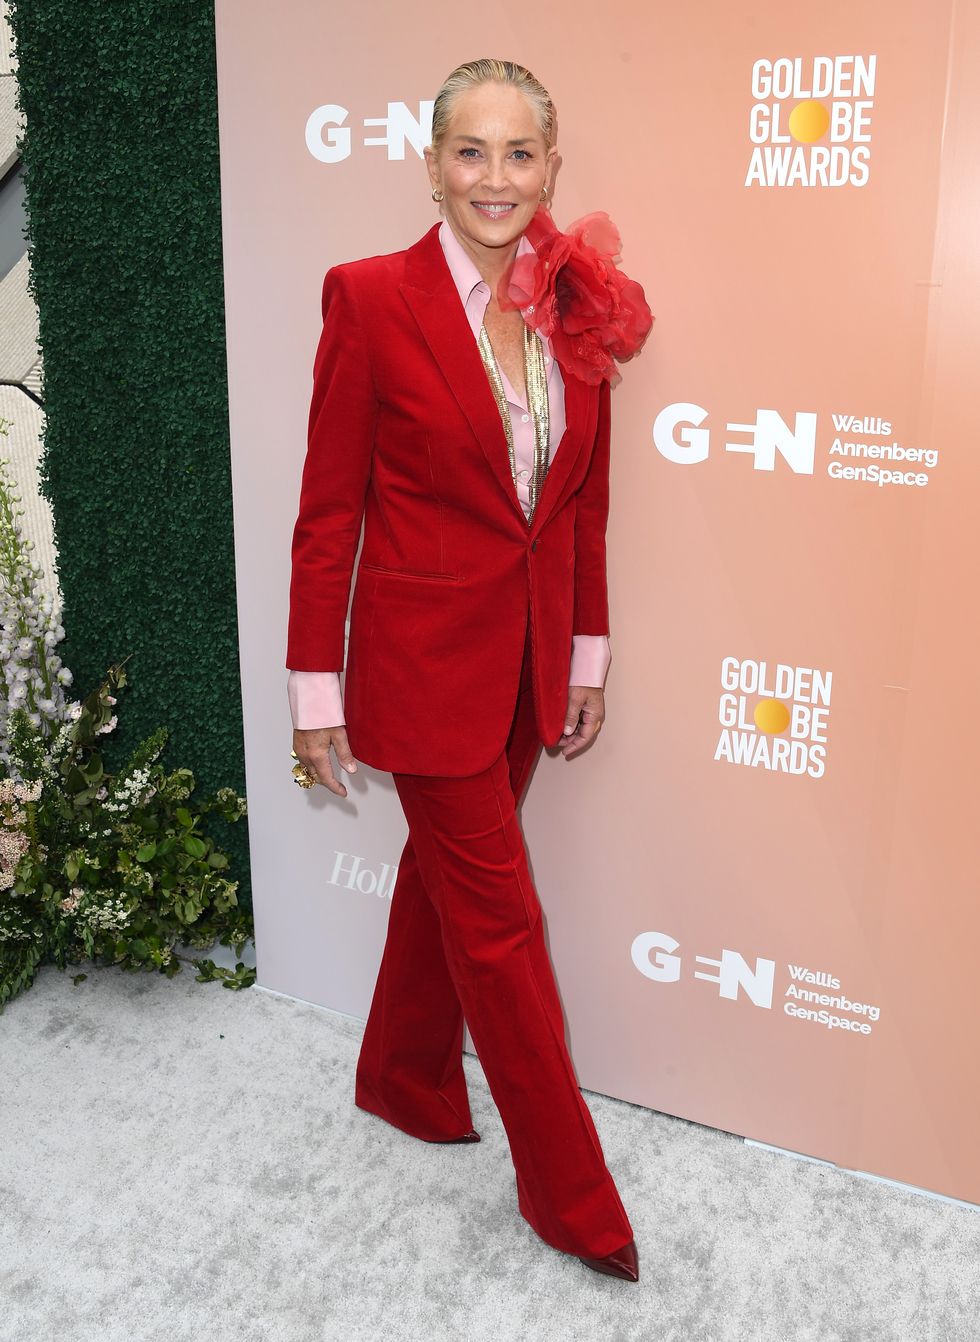 Soportar Factura Contratación Sharon Stone y el traje rojo con maxi flor en versión flamenca